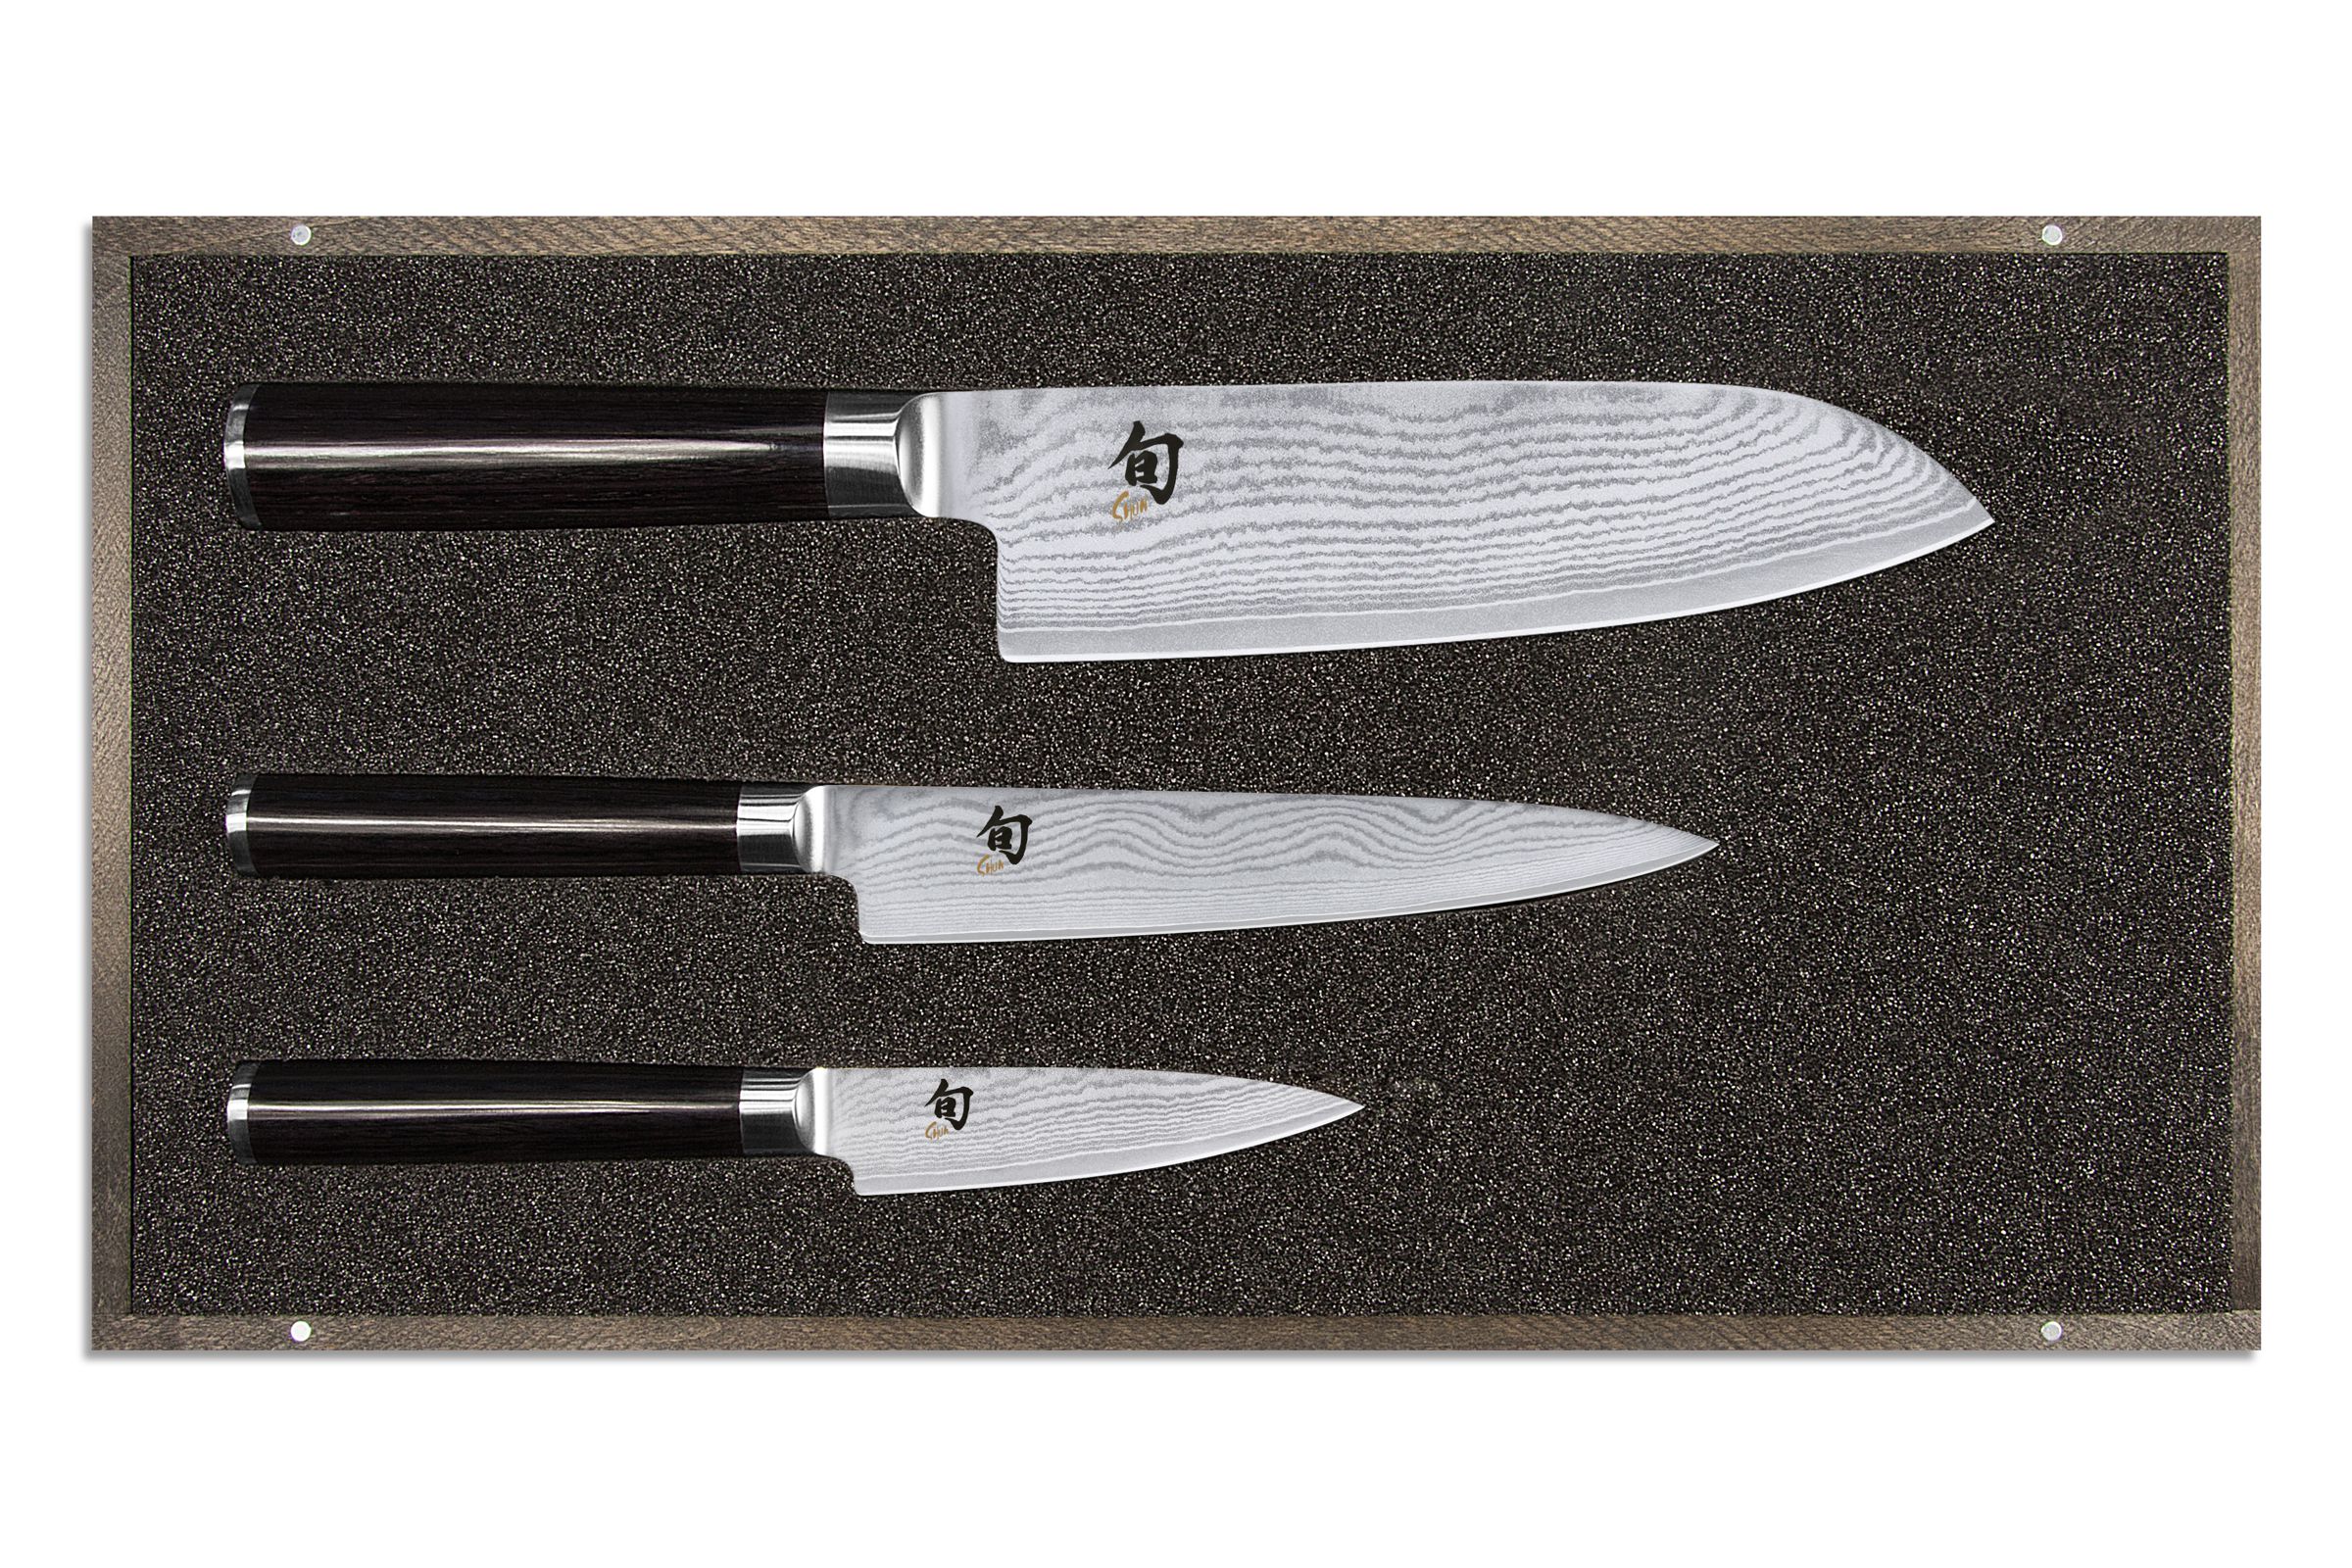 KAI Shun Classic Messer-Set 3 teilig - bestehend aus Santoku, Allzweckmesser und Officemesser - Produktansicht